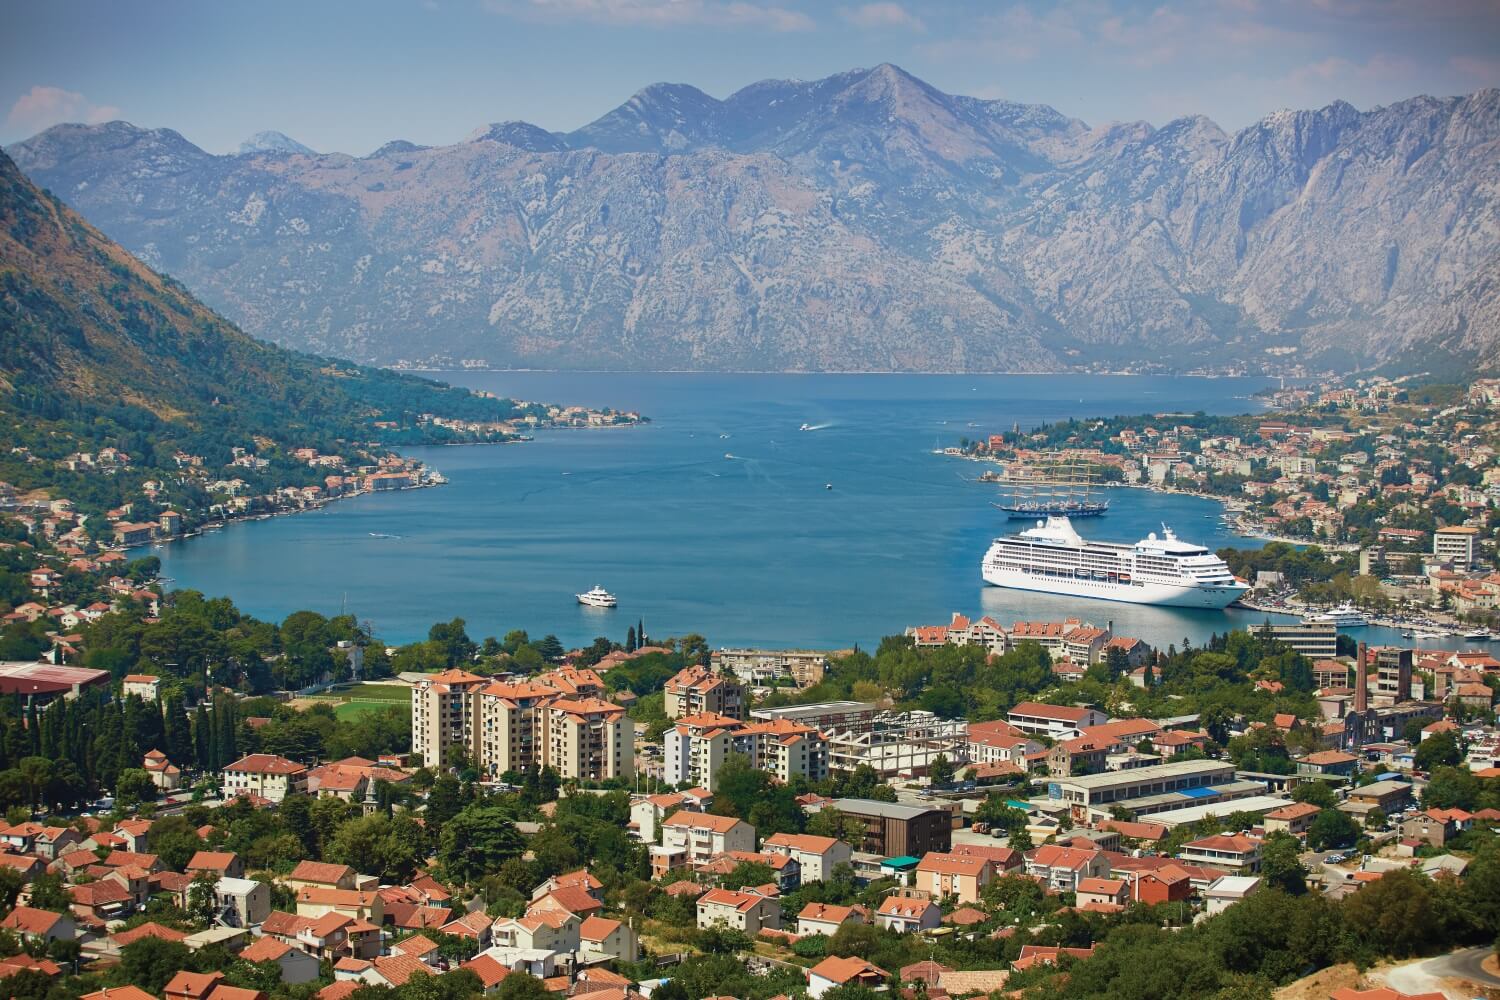 Et Regent-cruiseskip ligger til kai i Kotor, Montenegro. Bildet tatt fra en høyde i utkanten av byen. Foto.